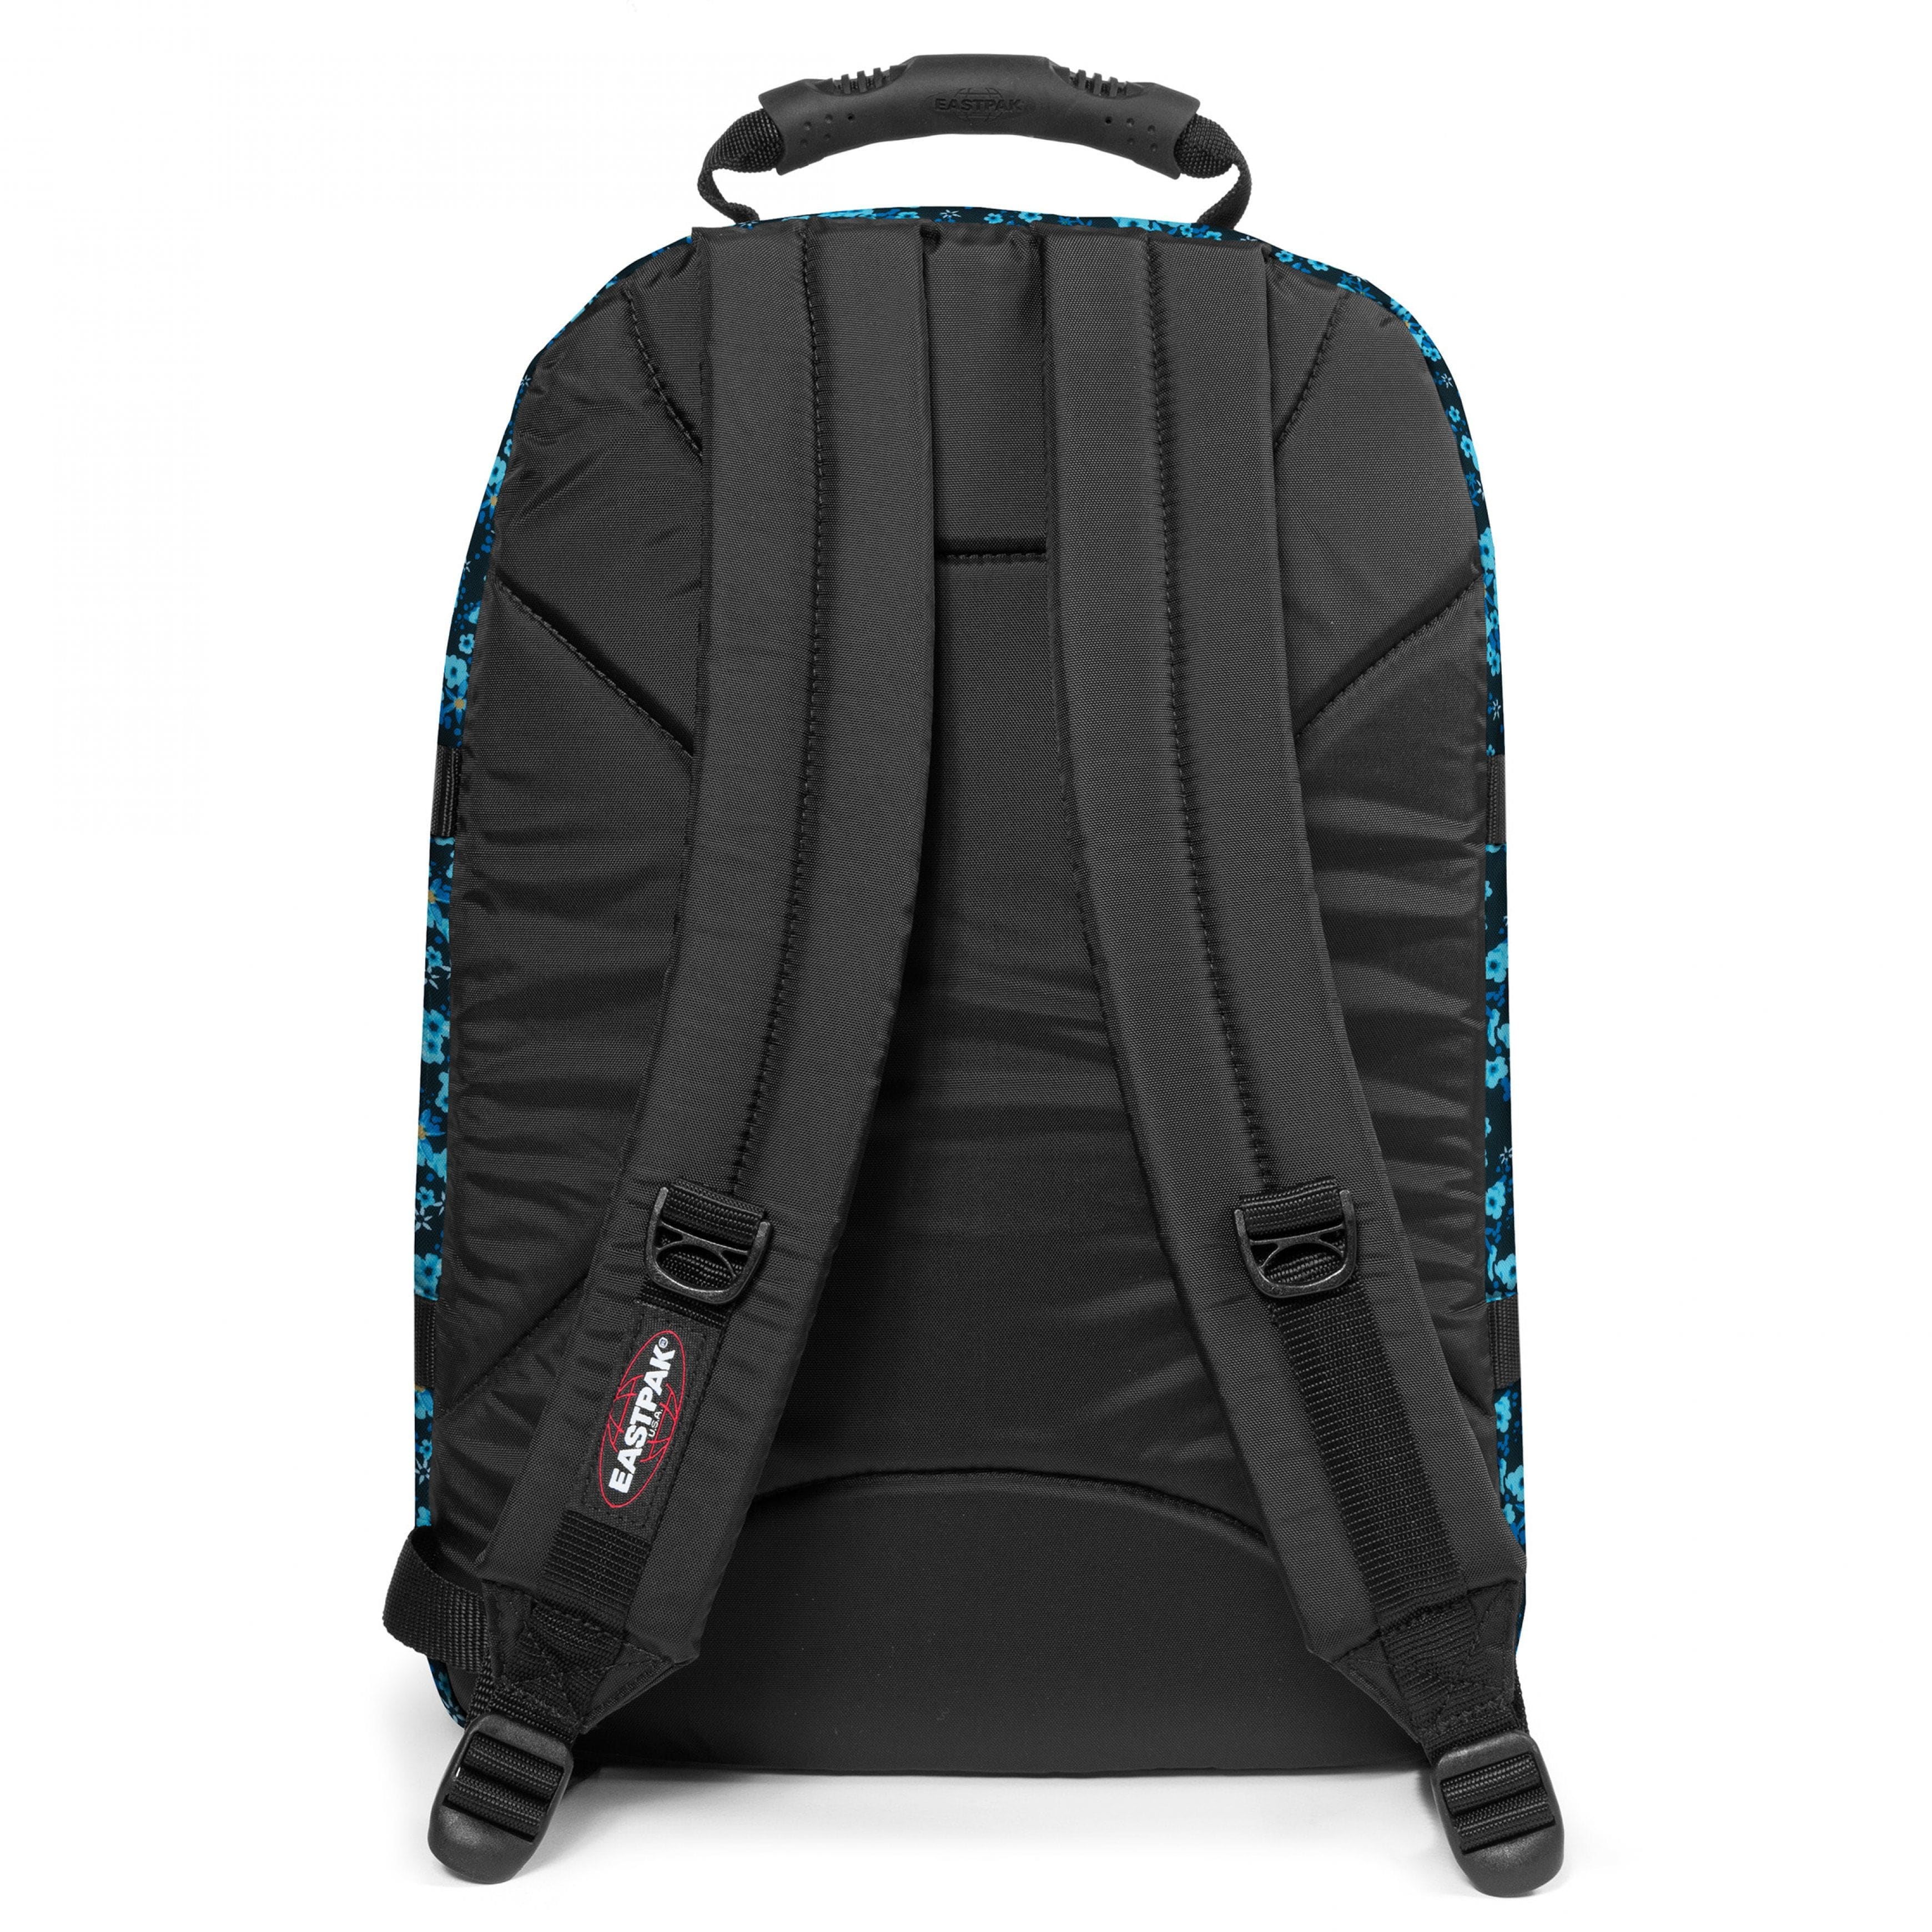 Eastpak-Provider-Large Backpack with laptop compartment-Ditsy Black-EK000520U51